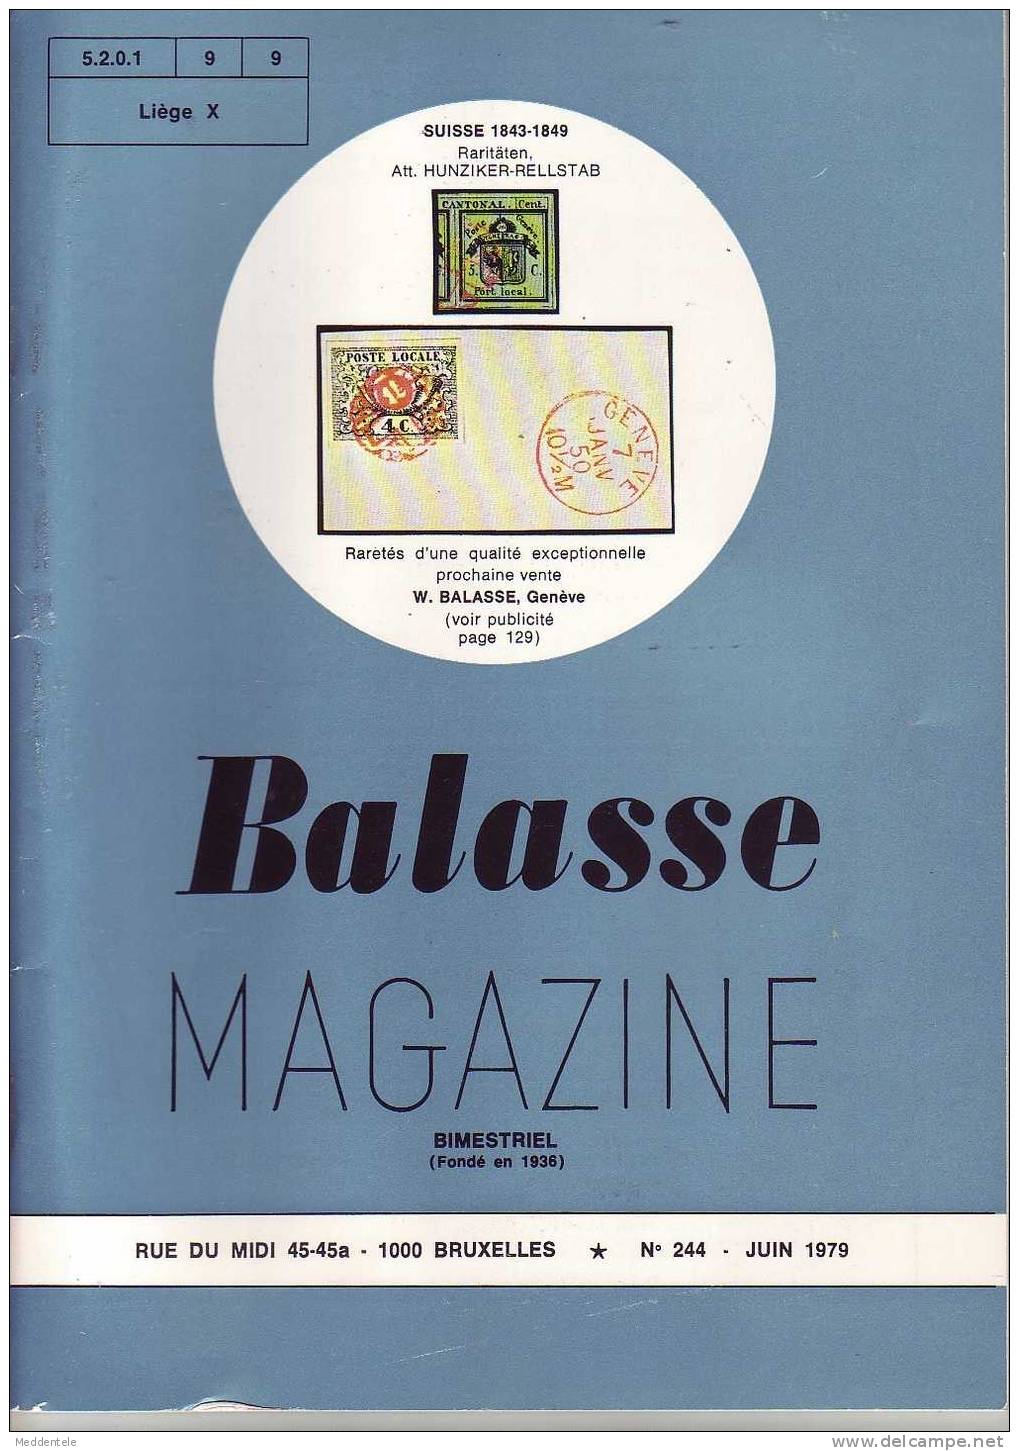 BALASSE MAGAZINE N° 244 - Français (àpd. 1941)